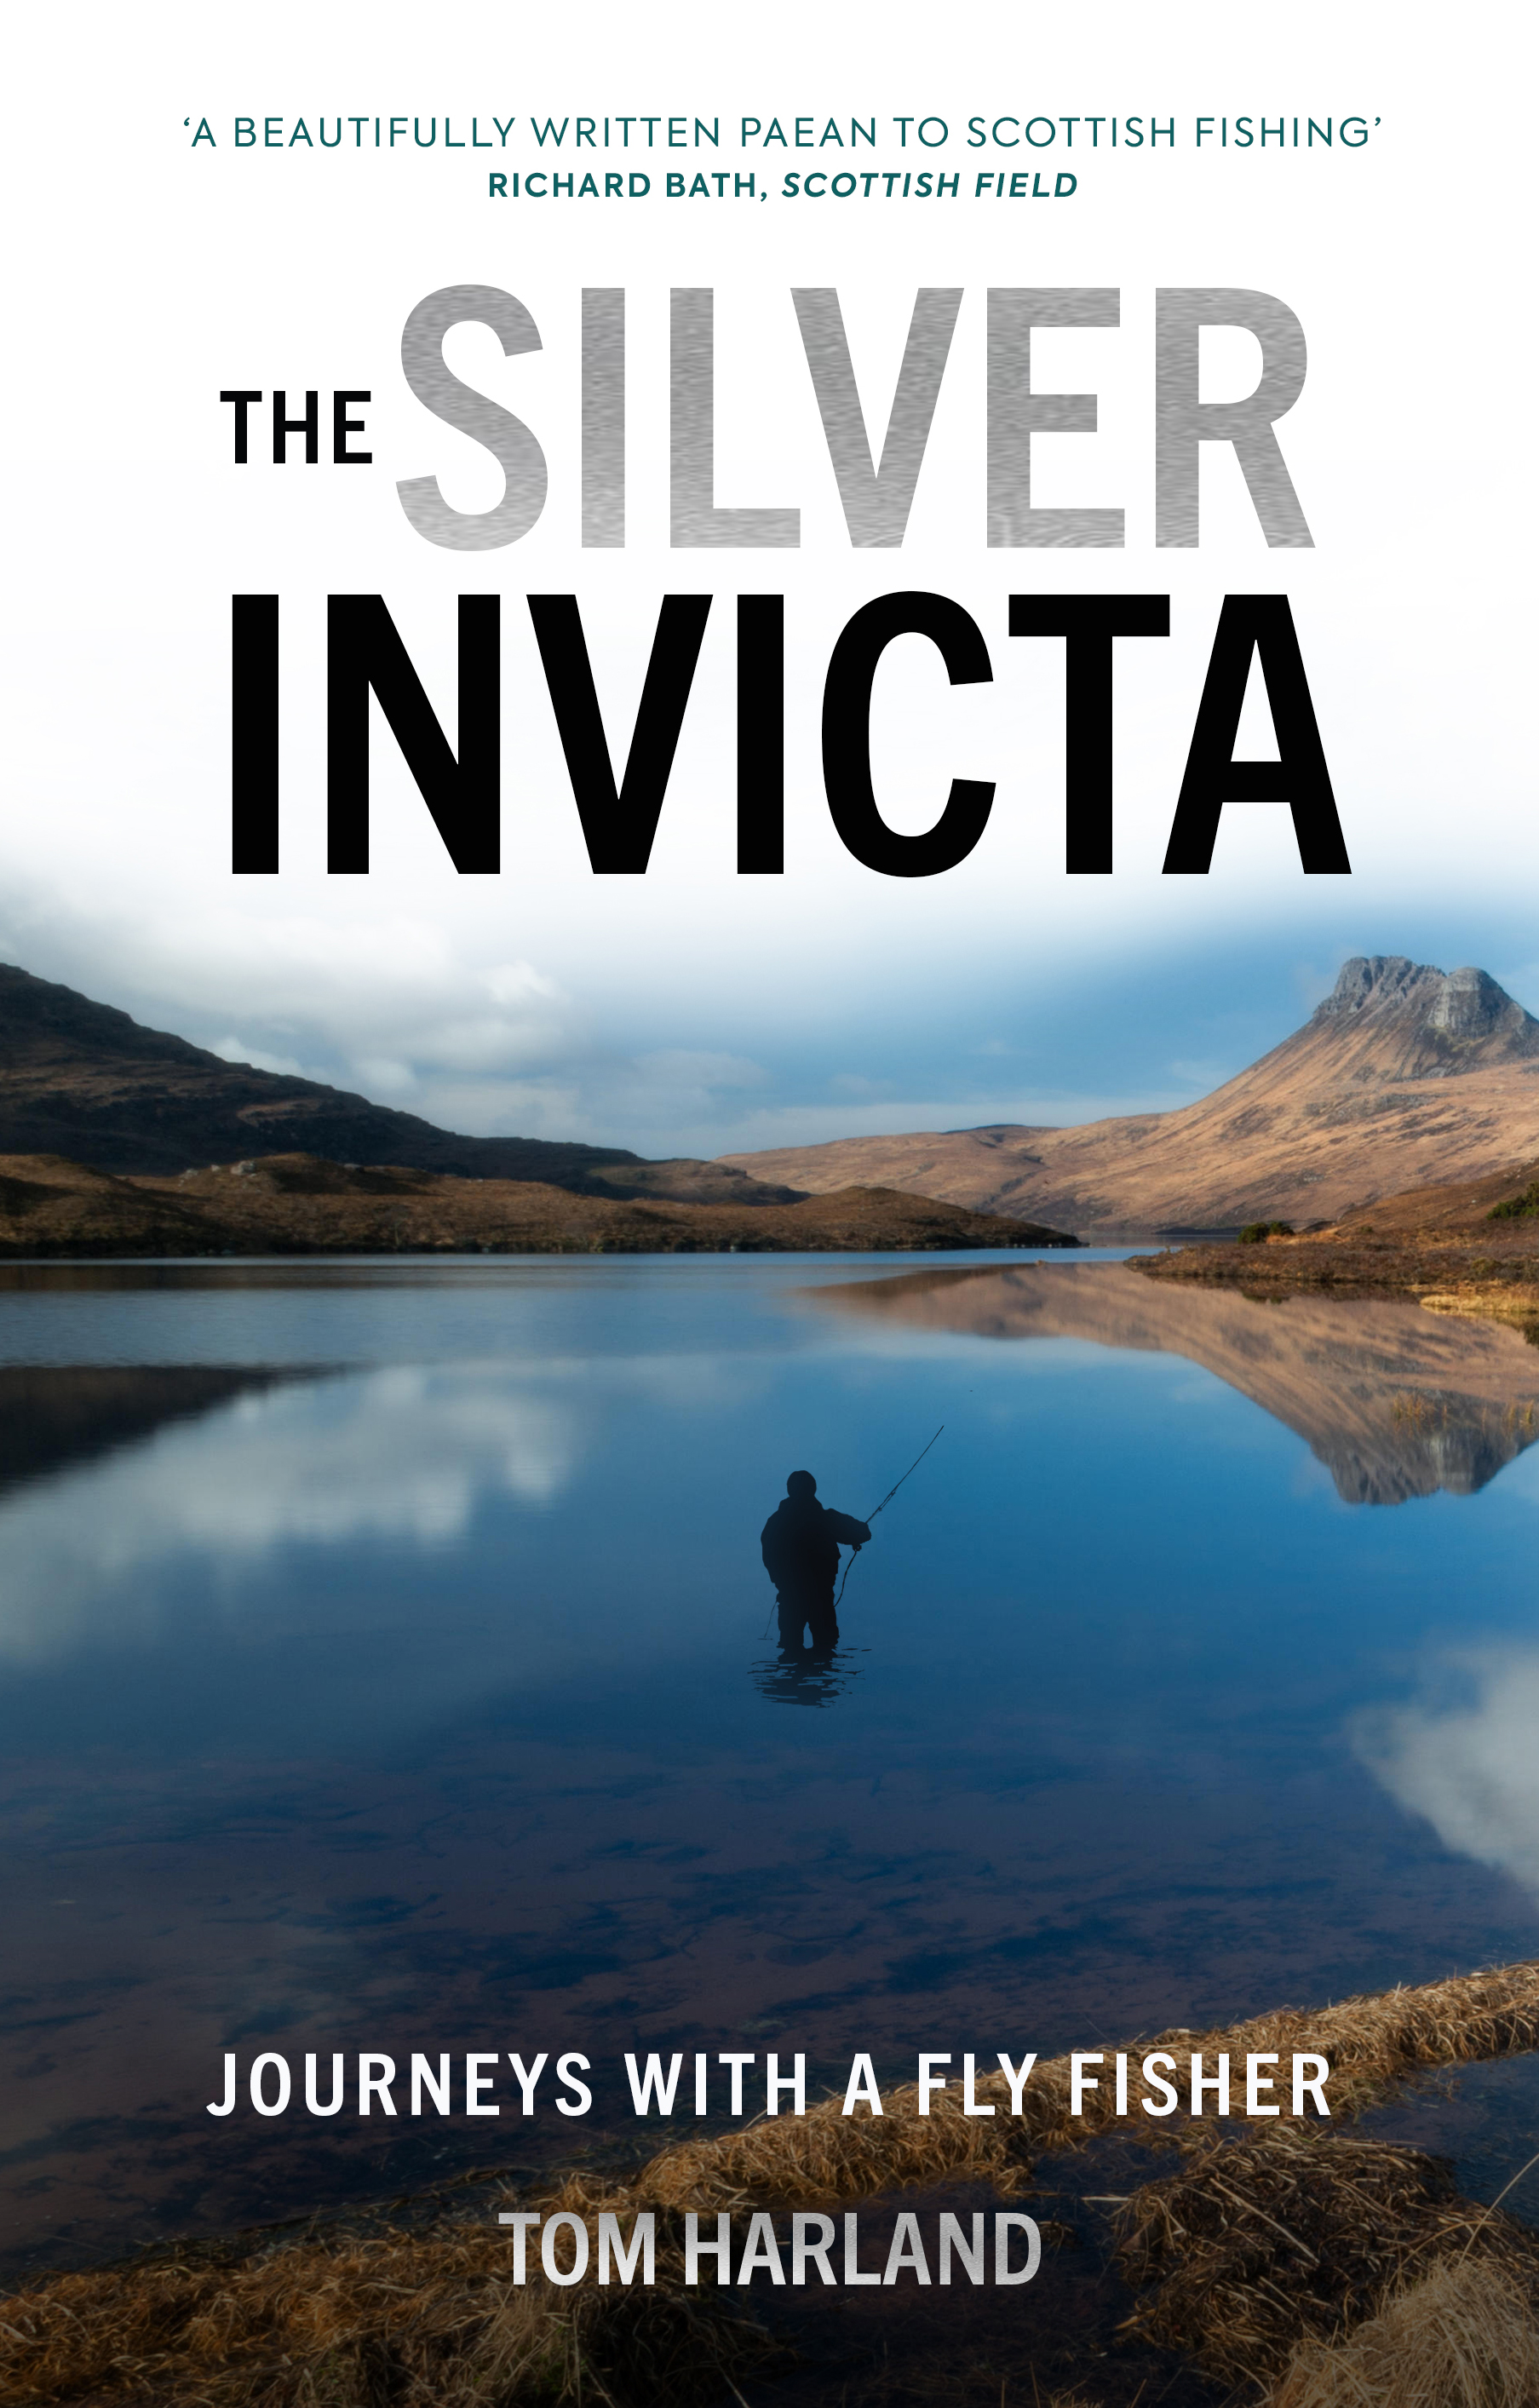 The Silver Invicta